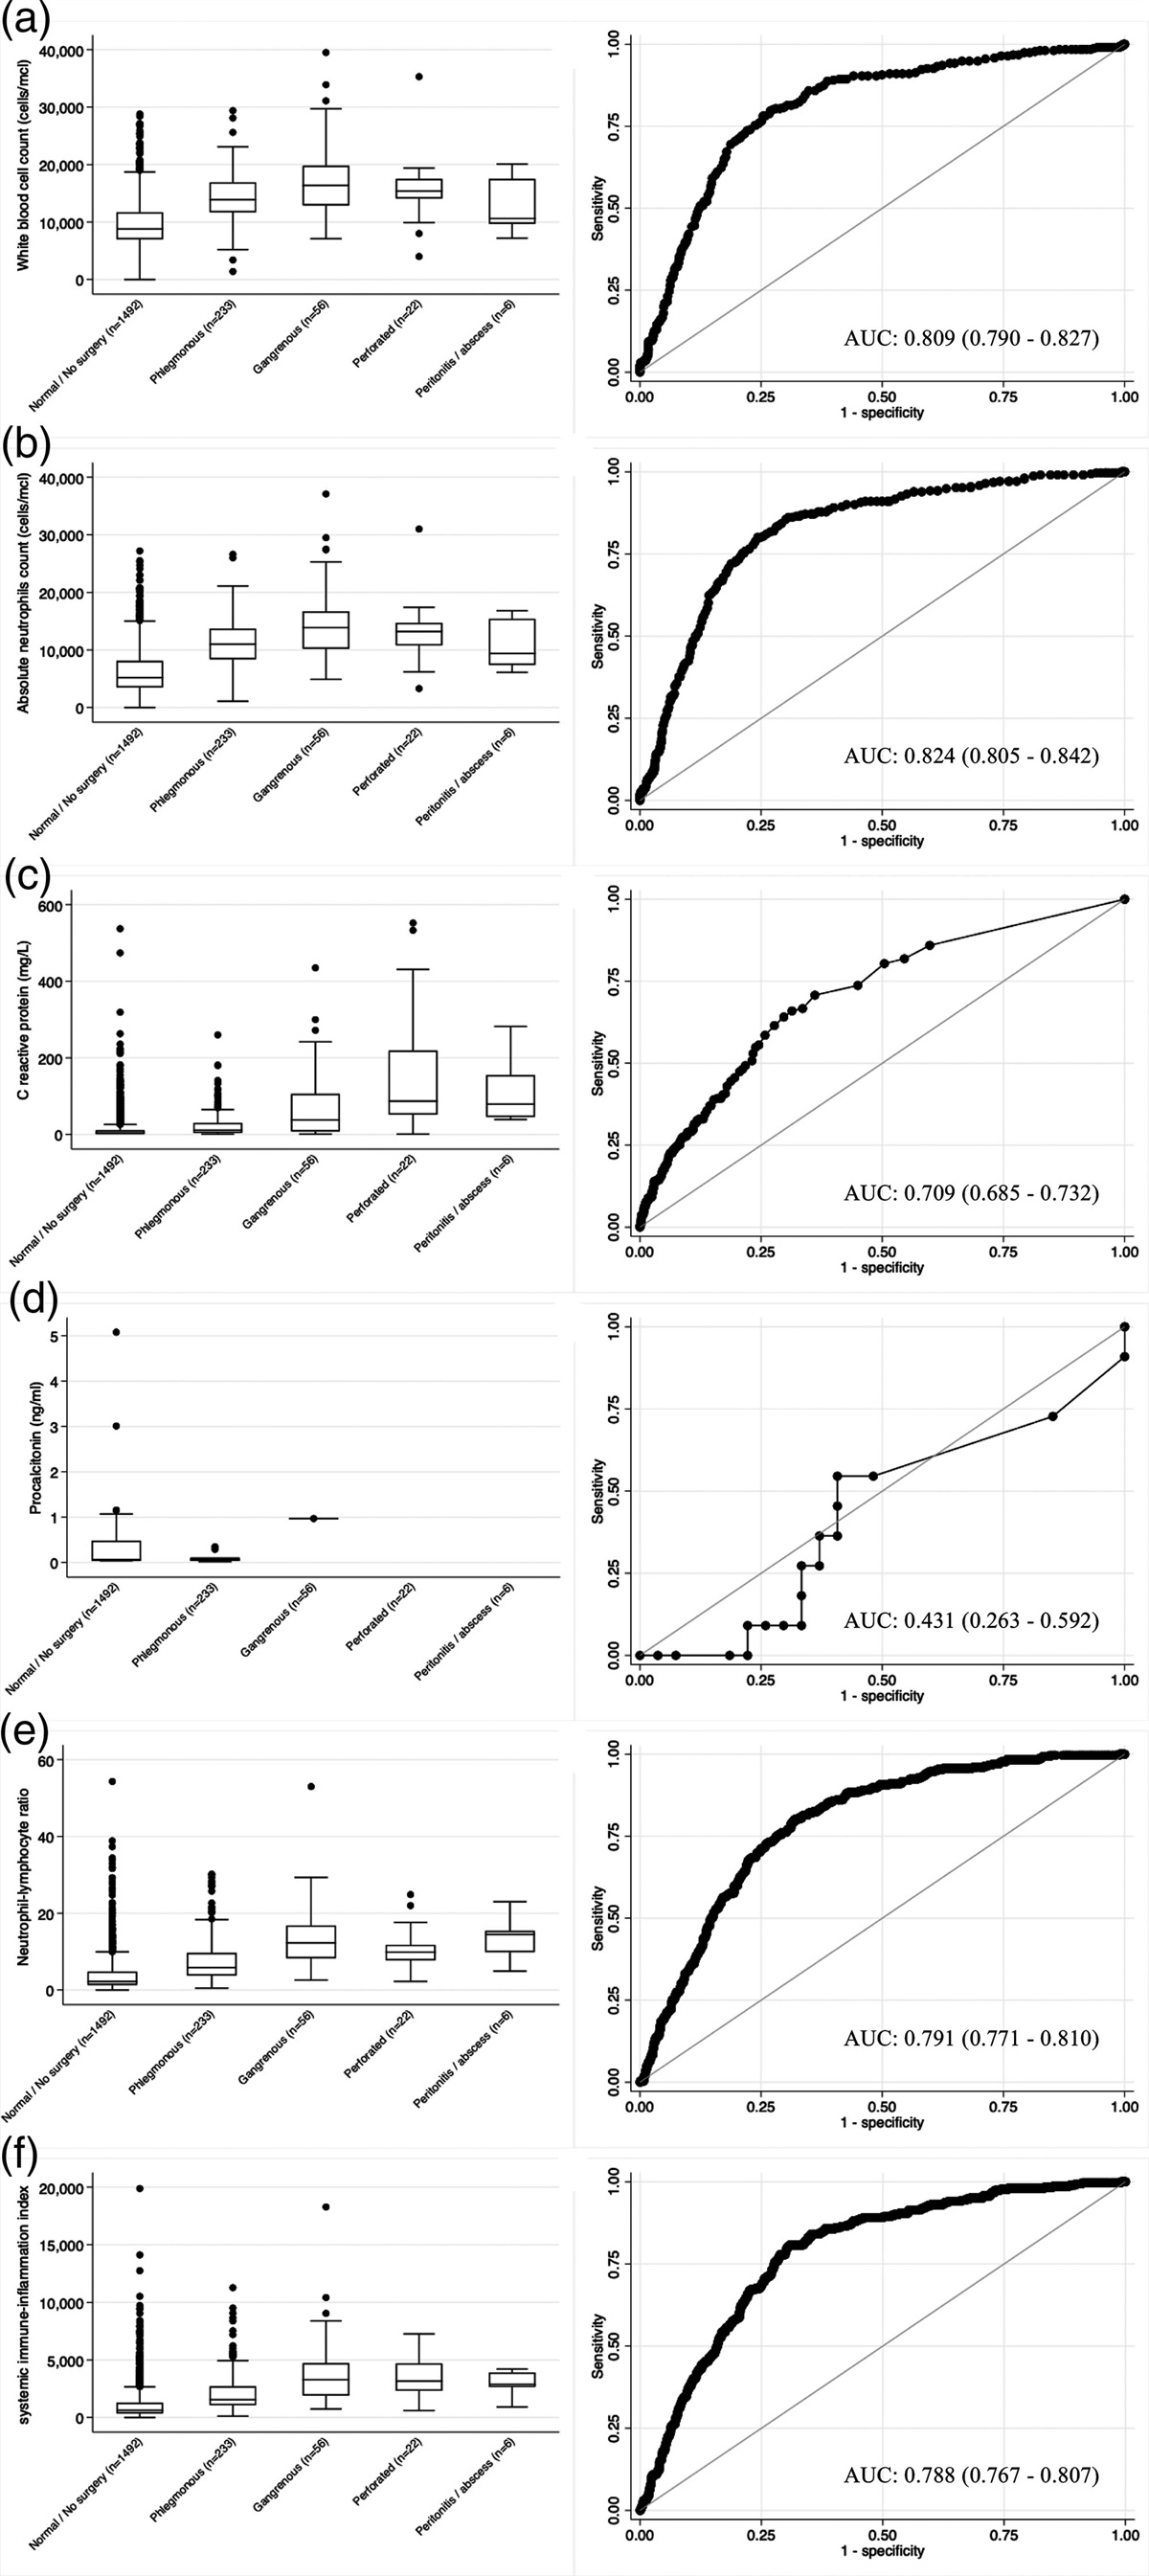 Diagnostic performance of serum biomarkers in acute appendicitis in children